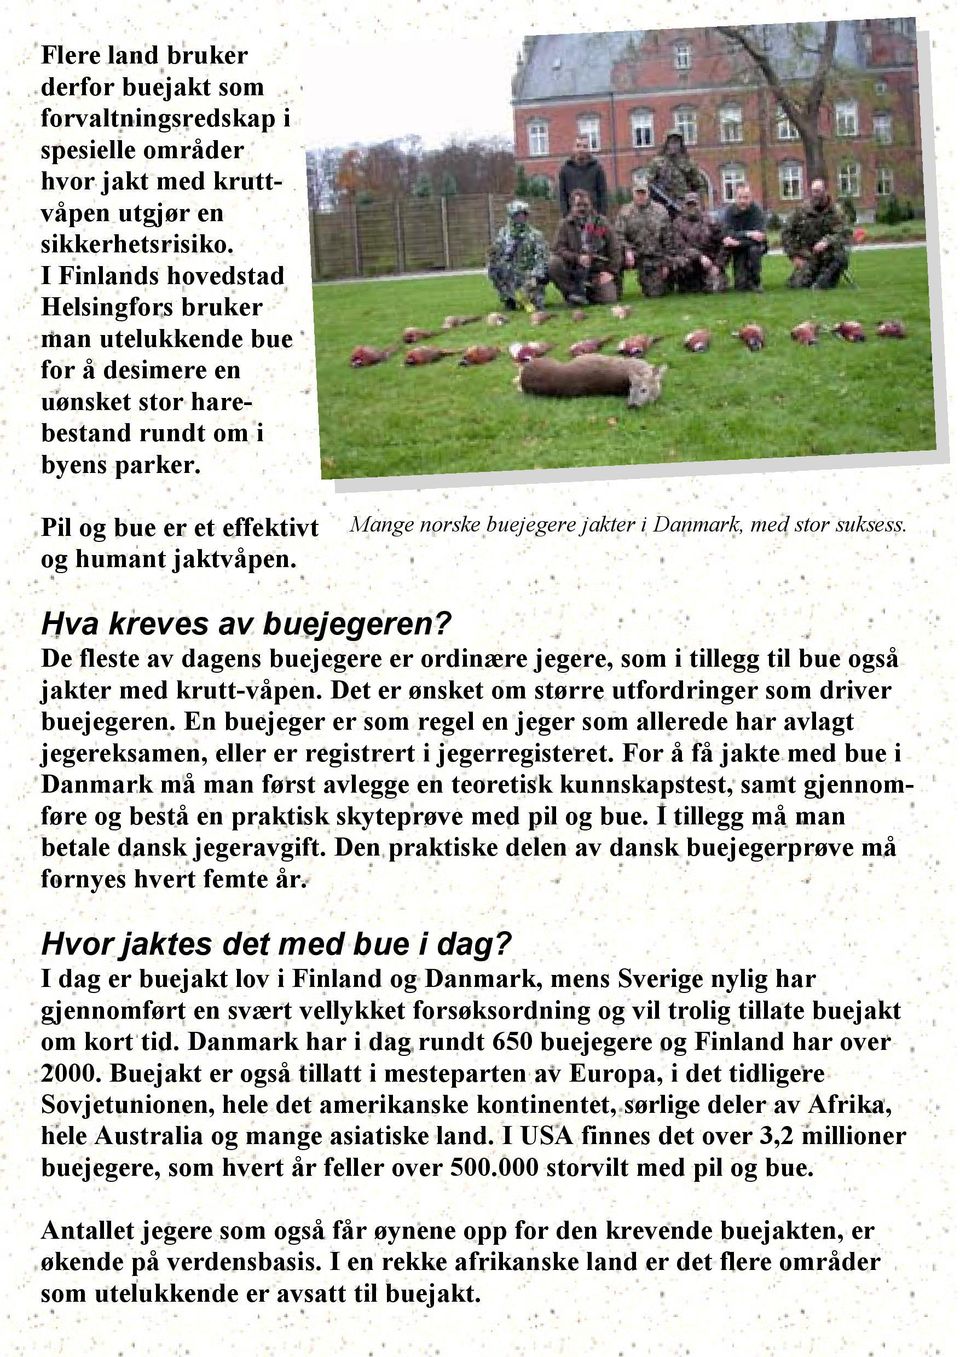 Mange norske buejegere jakter i Danmark, med stor suksess. Hva kreves av buejegeren? De fleste av dagens buejegere er ordinære jegere, som i tillegg til bue også jakter med krutt-våpen.